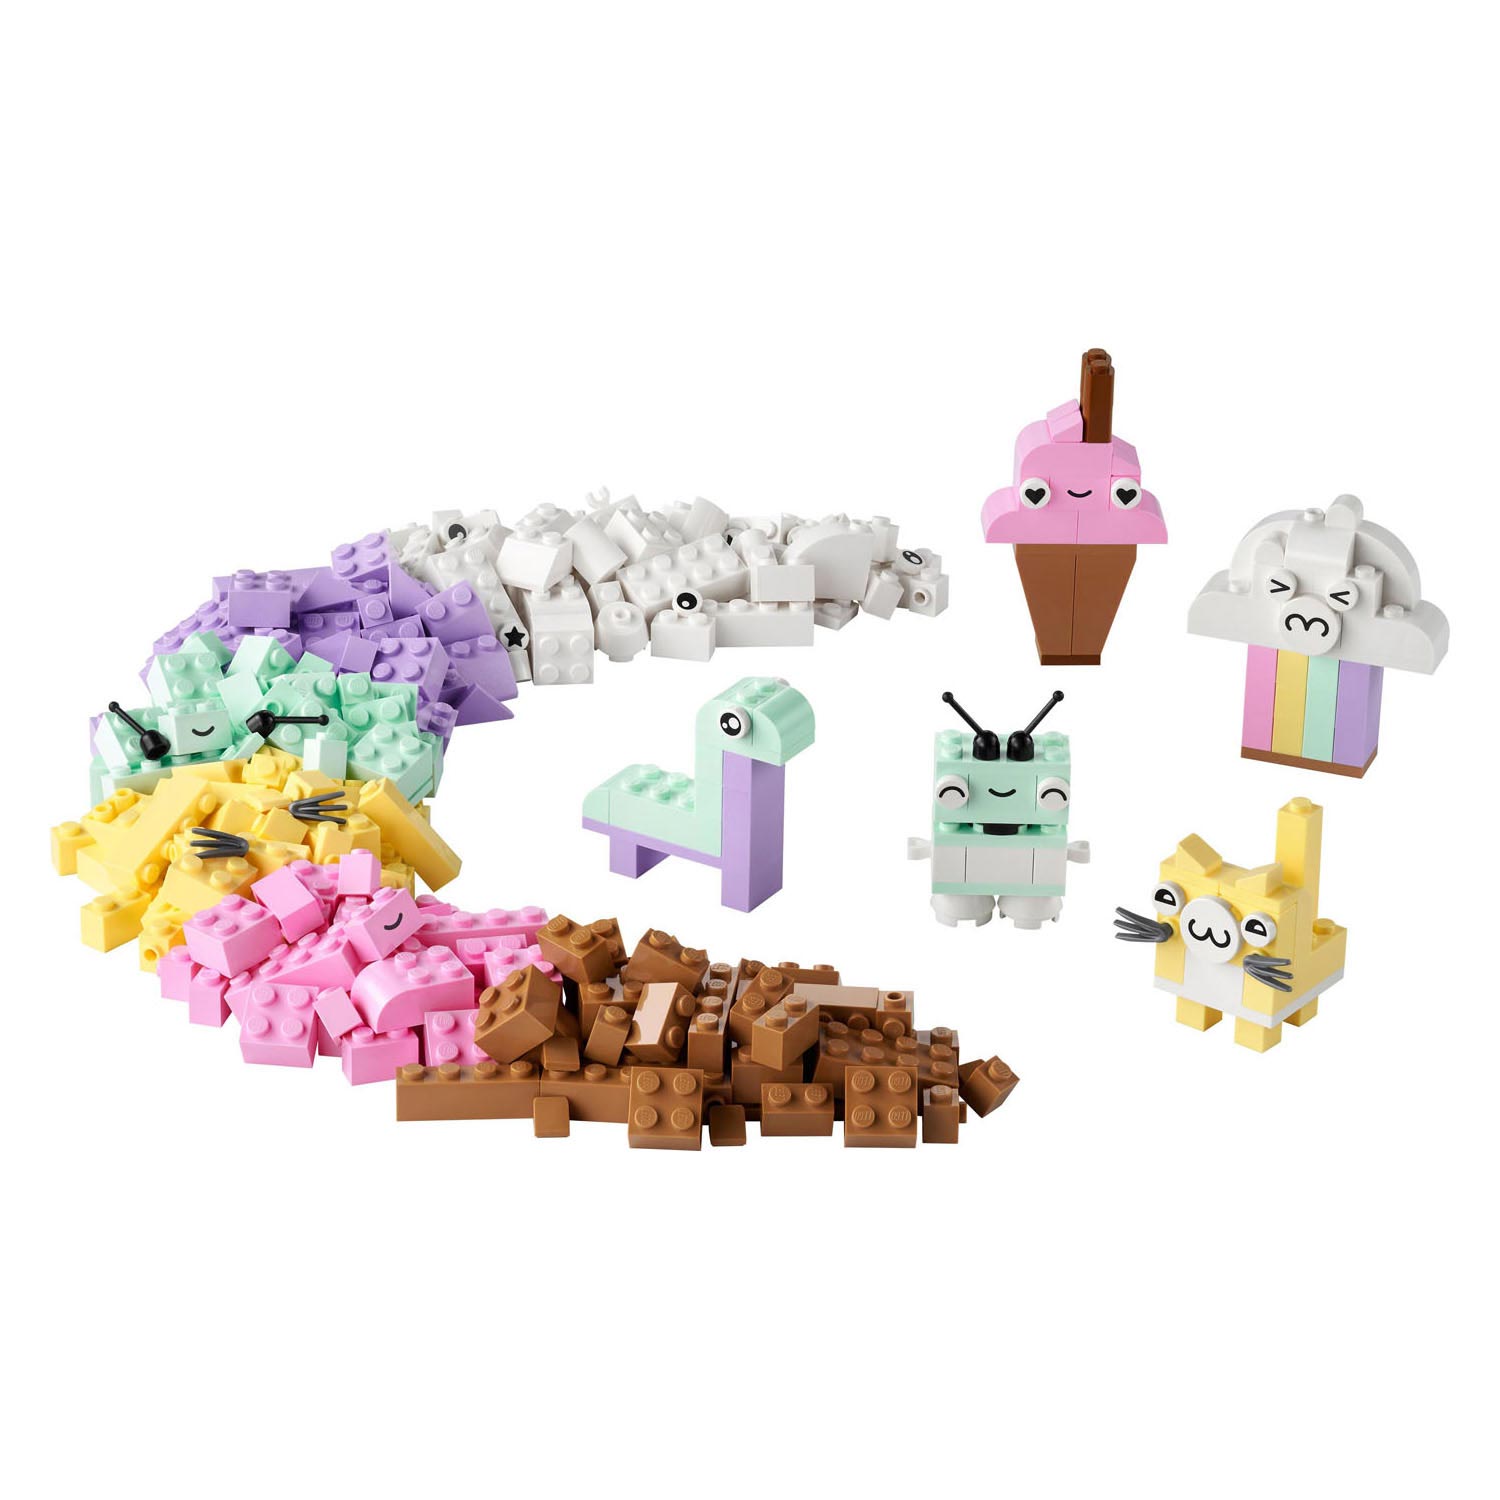 LEGO Classic 11028 Kreatives Spielen mit Pastellfarben